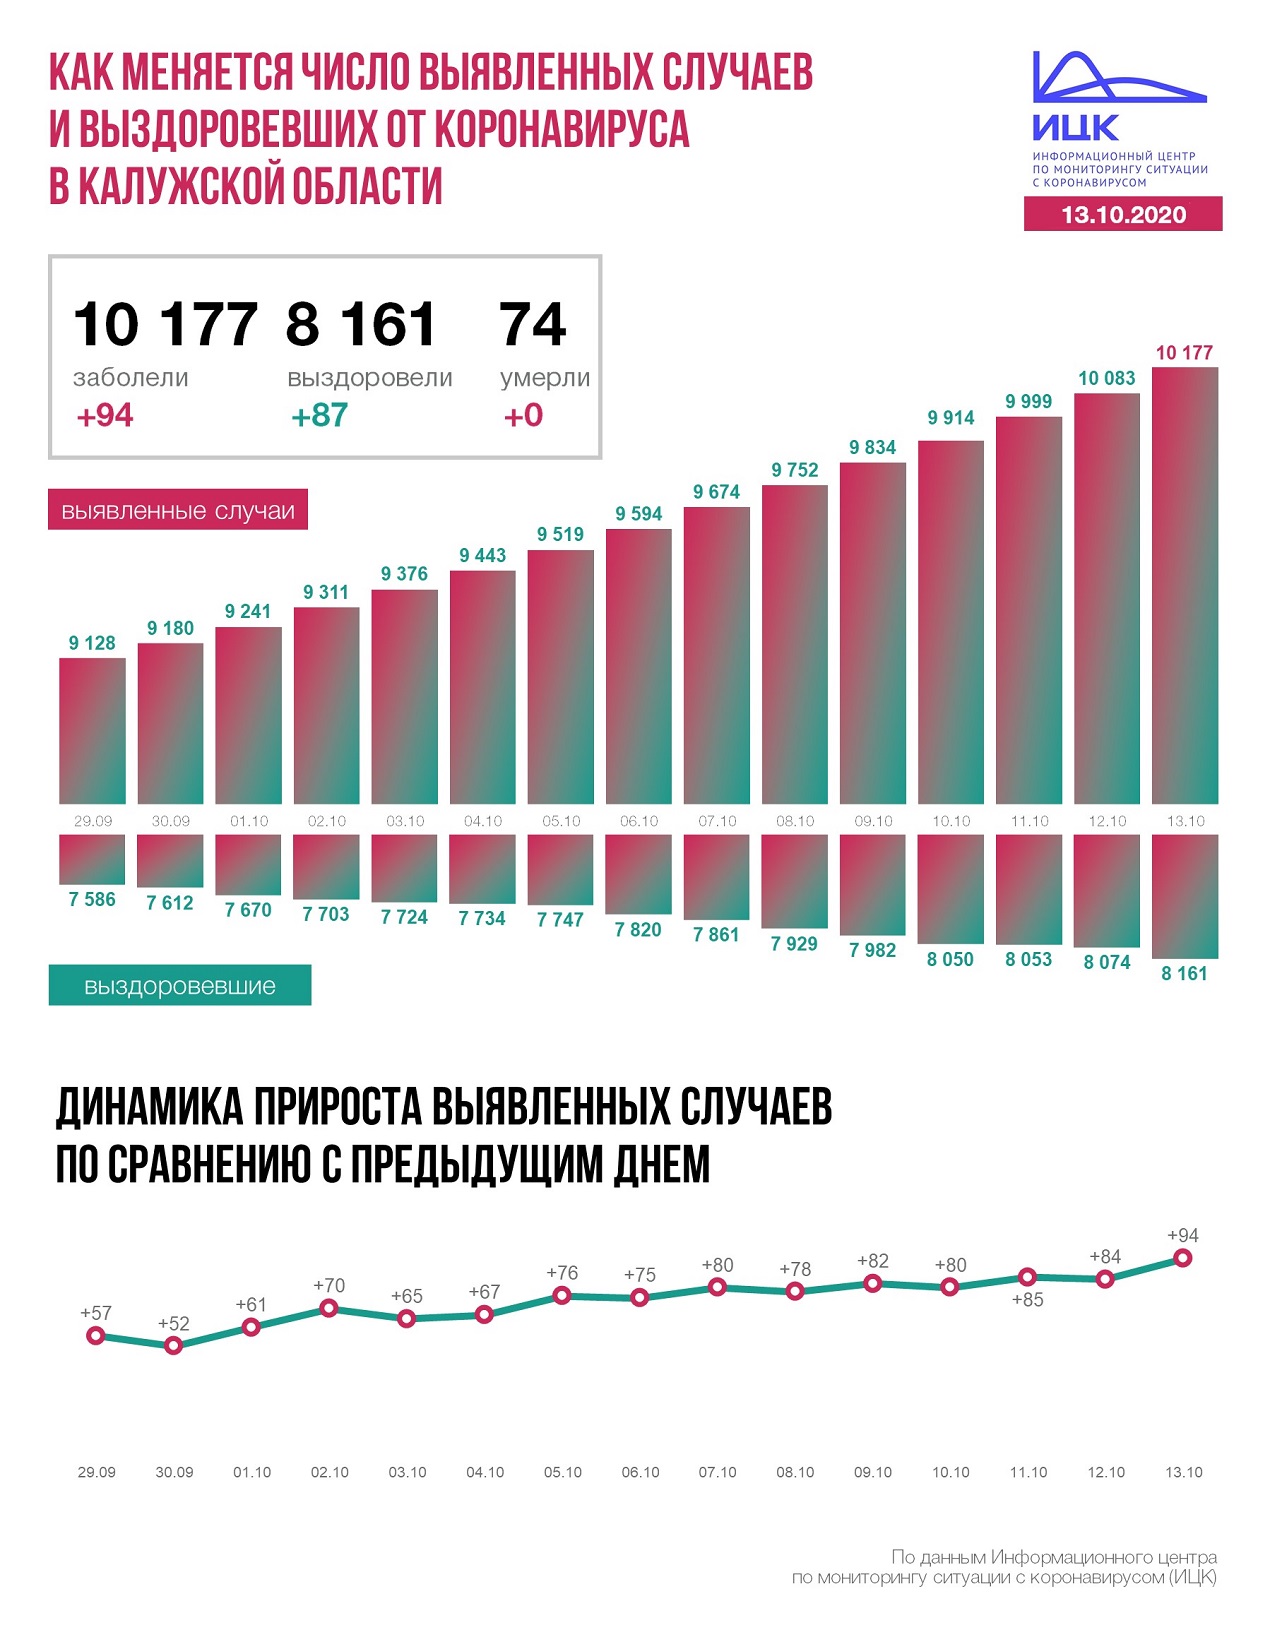 Официальные данные федерального оперативного штаба по коронавирусу в Калужской области на 13 октября 2020 года.